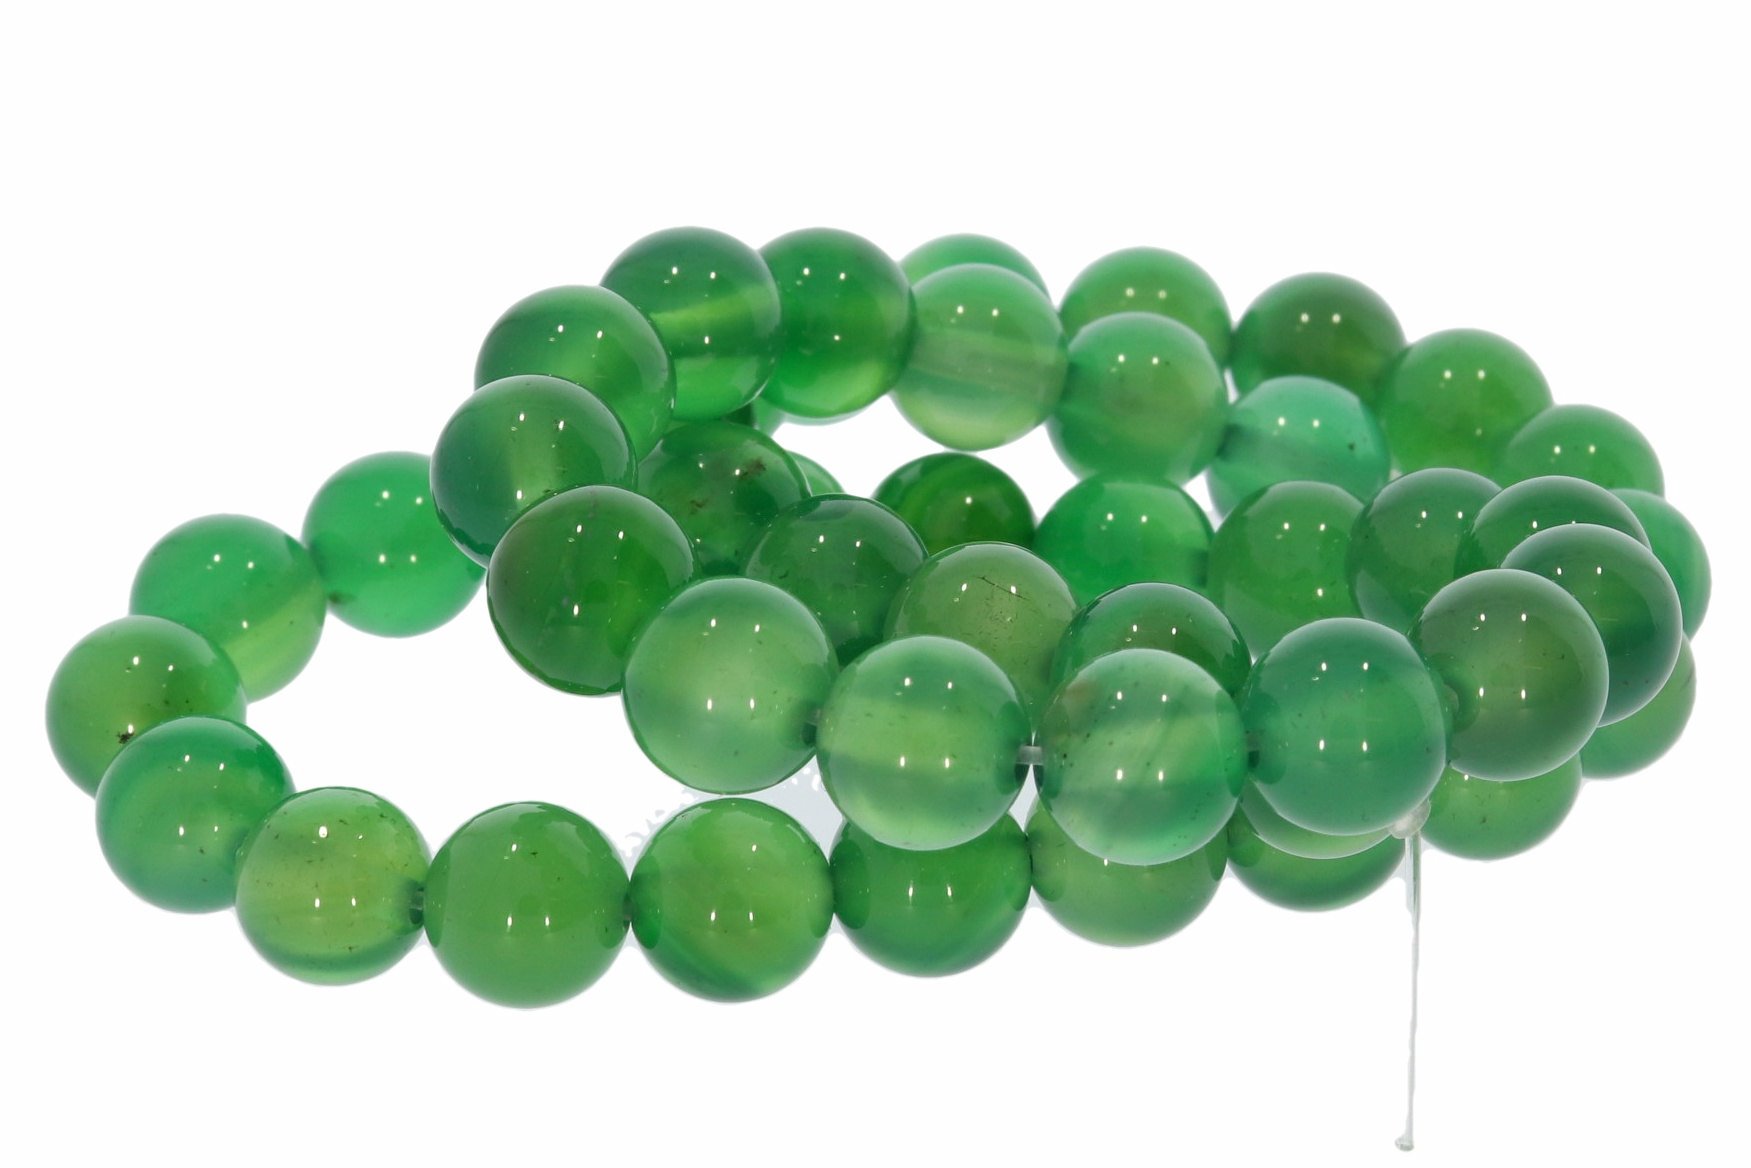 8S123 - Achat grün einfarbig 8mm Strang Mineralien Edelstein